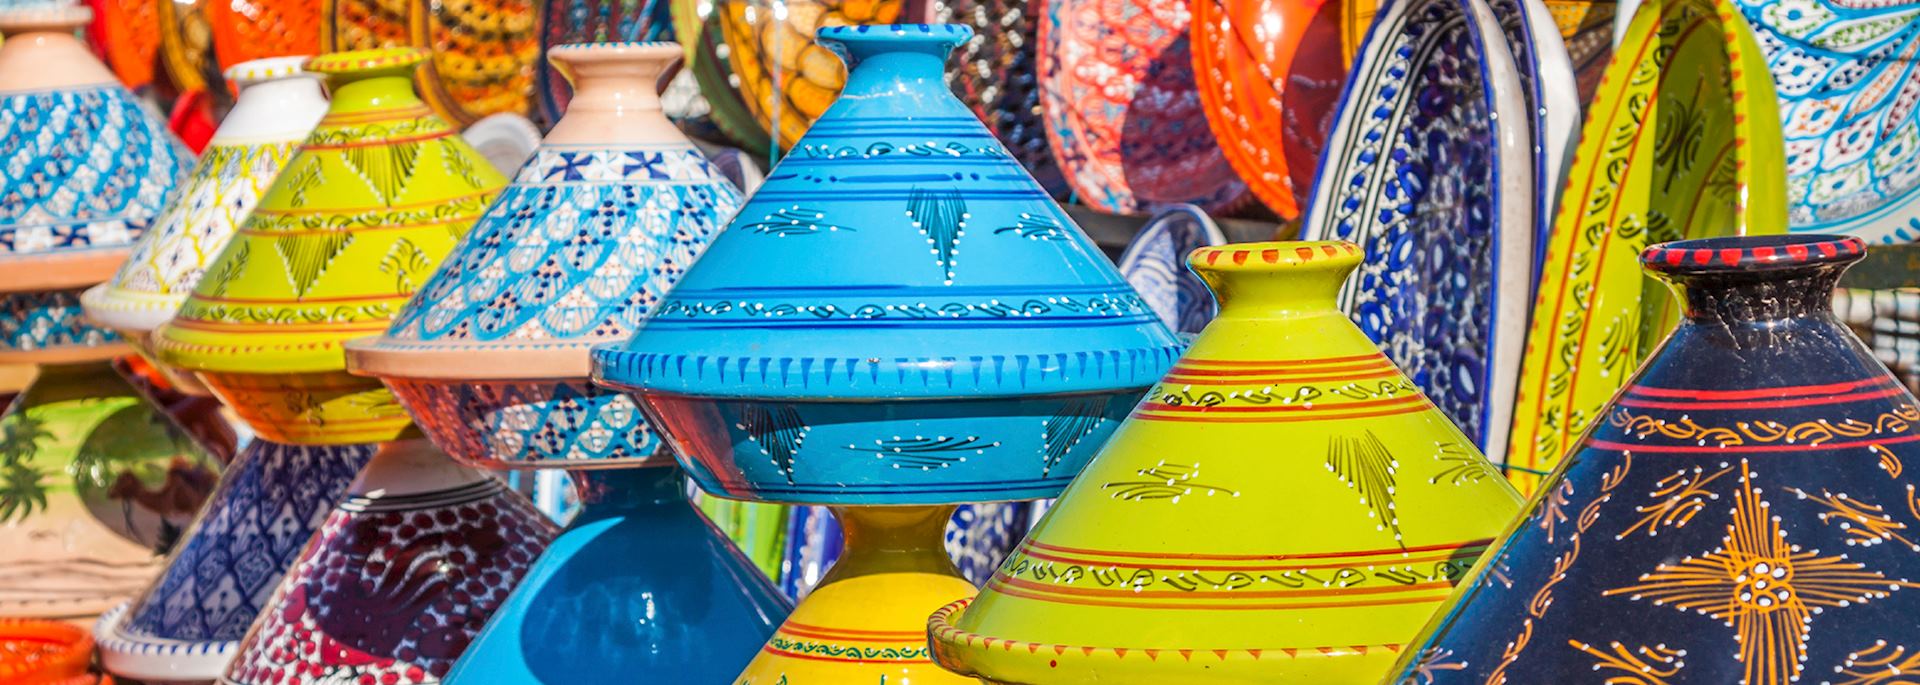 Tajines in the market, Marrakesh